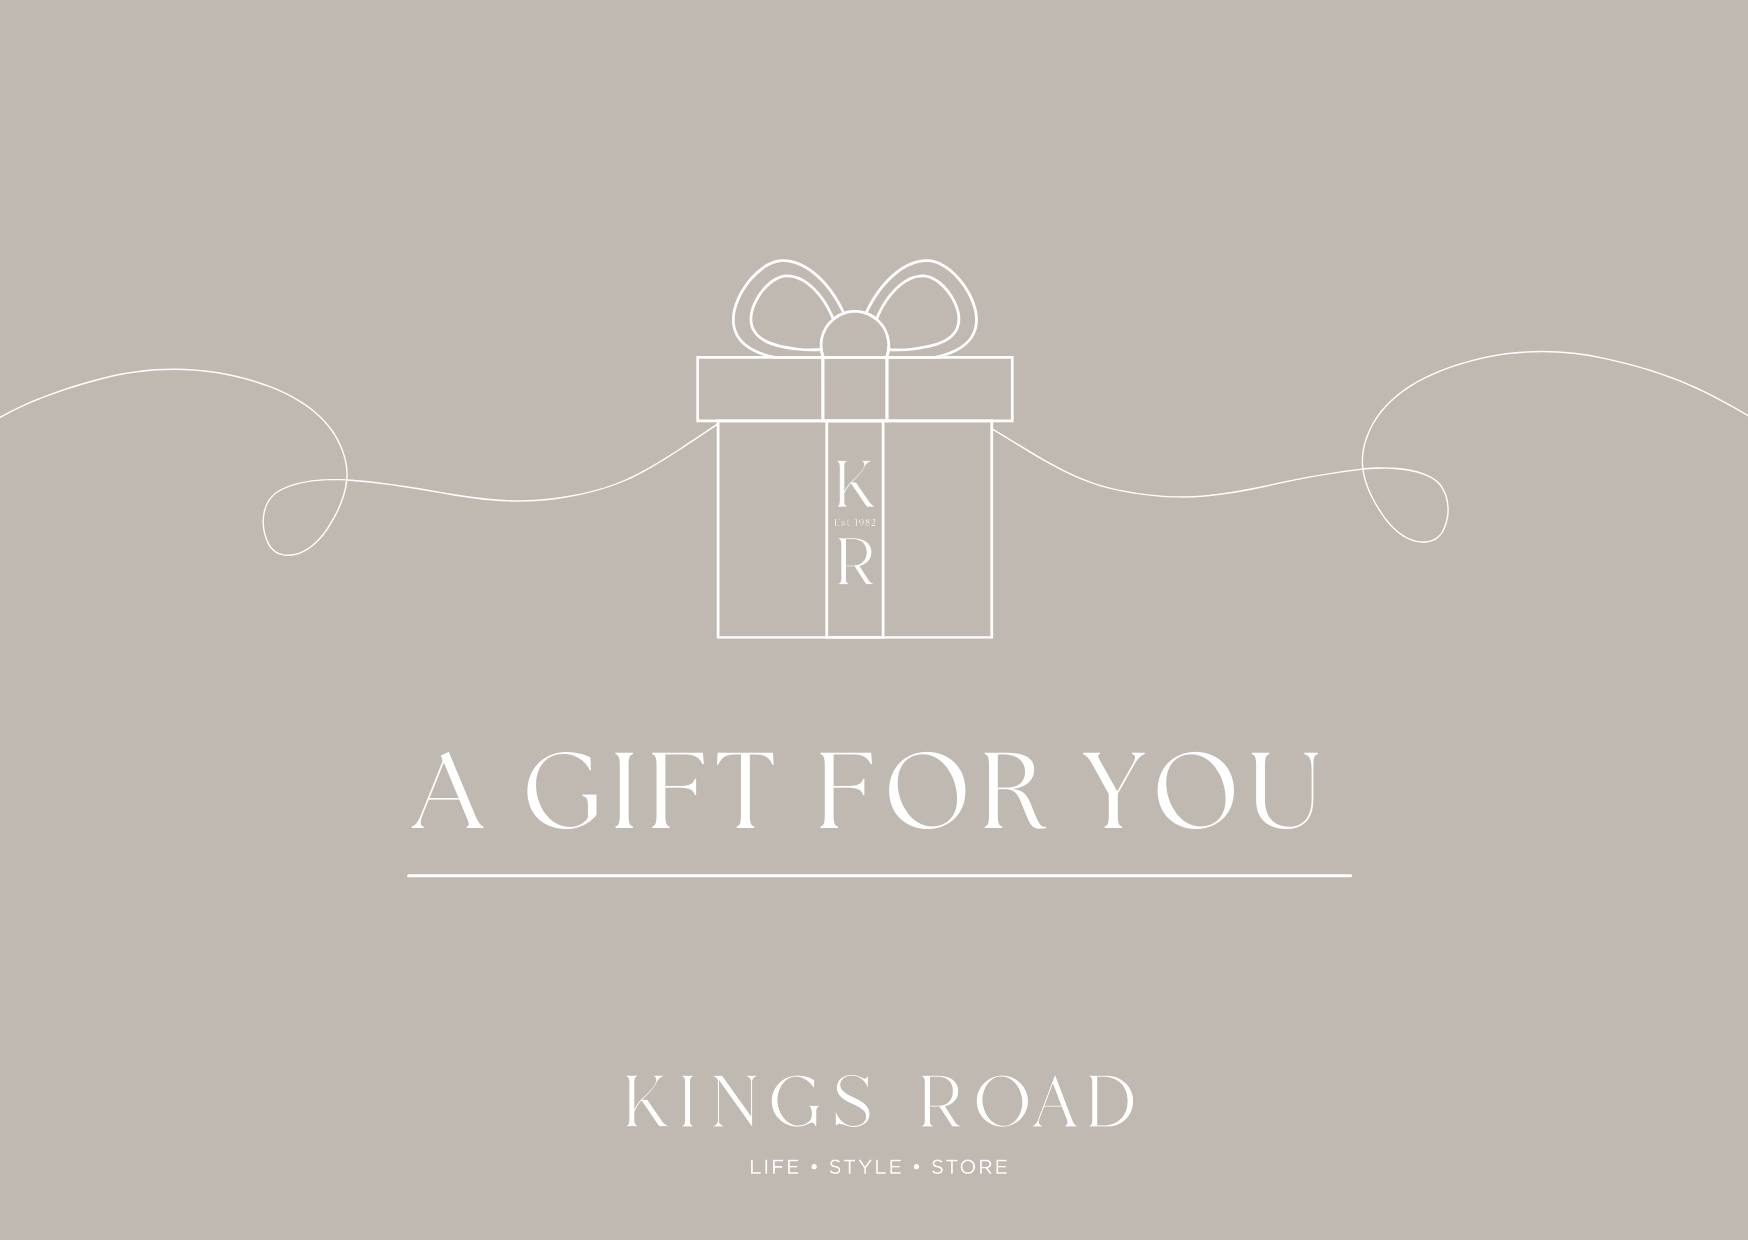 Kings Road Gift Voucher